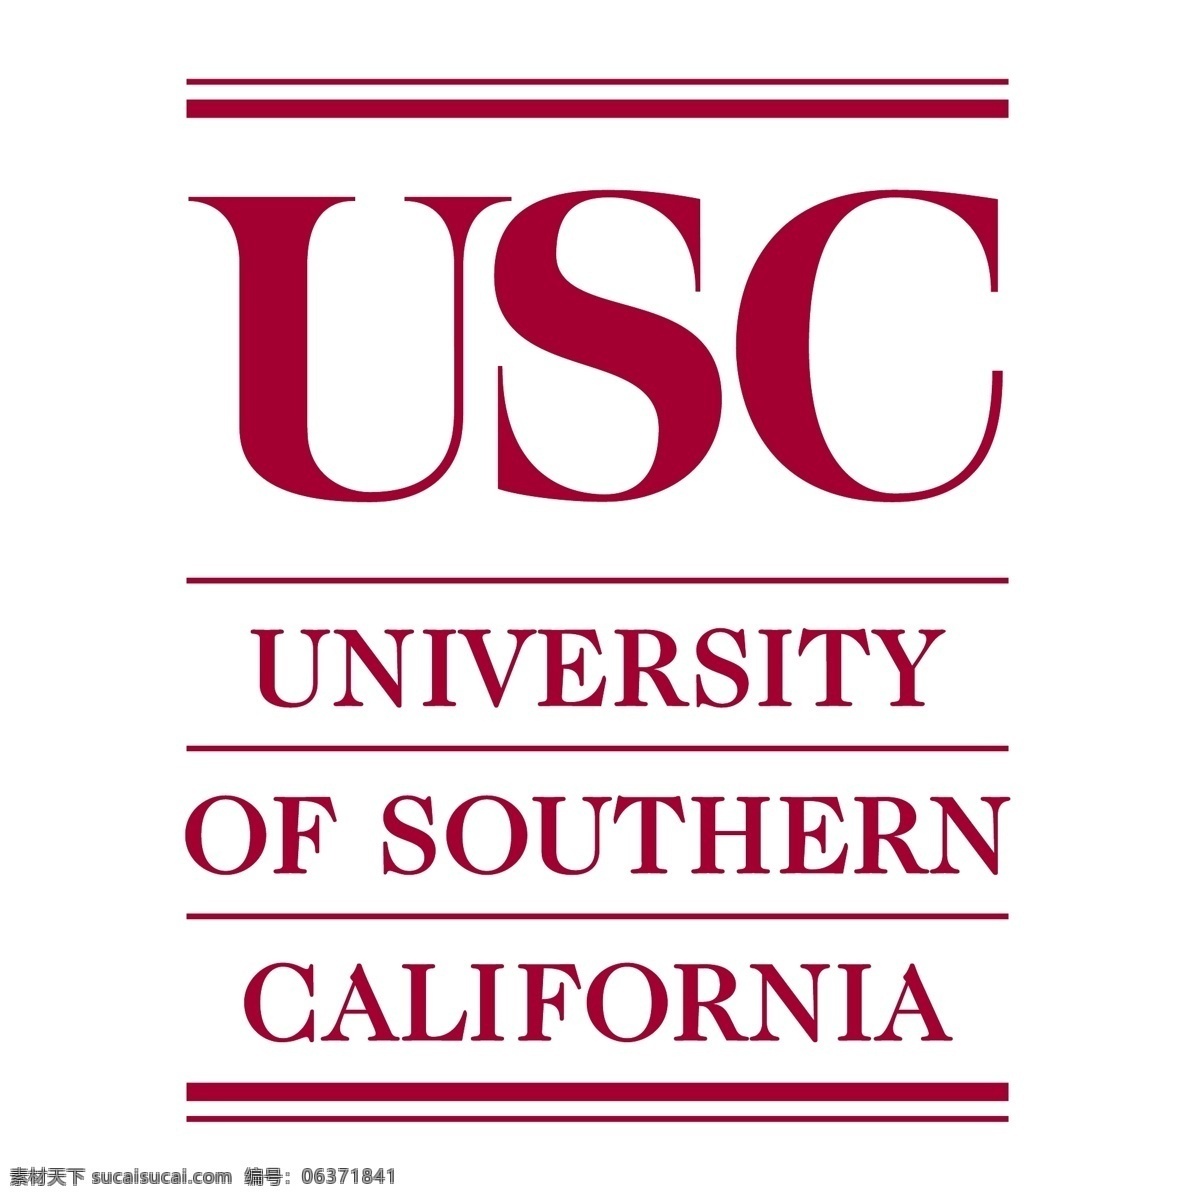 南加州大学5 南加州大学 加州 大学 标志 矢量 南加州 logo usc eps向量 免费 矢量图 建筑家居